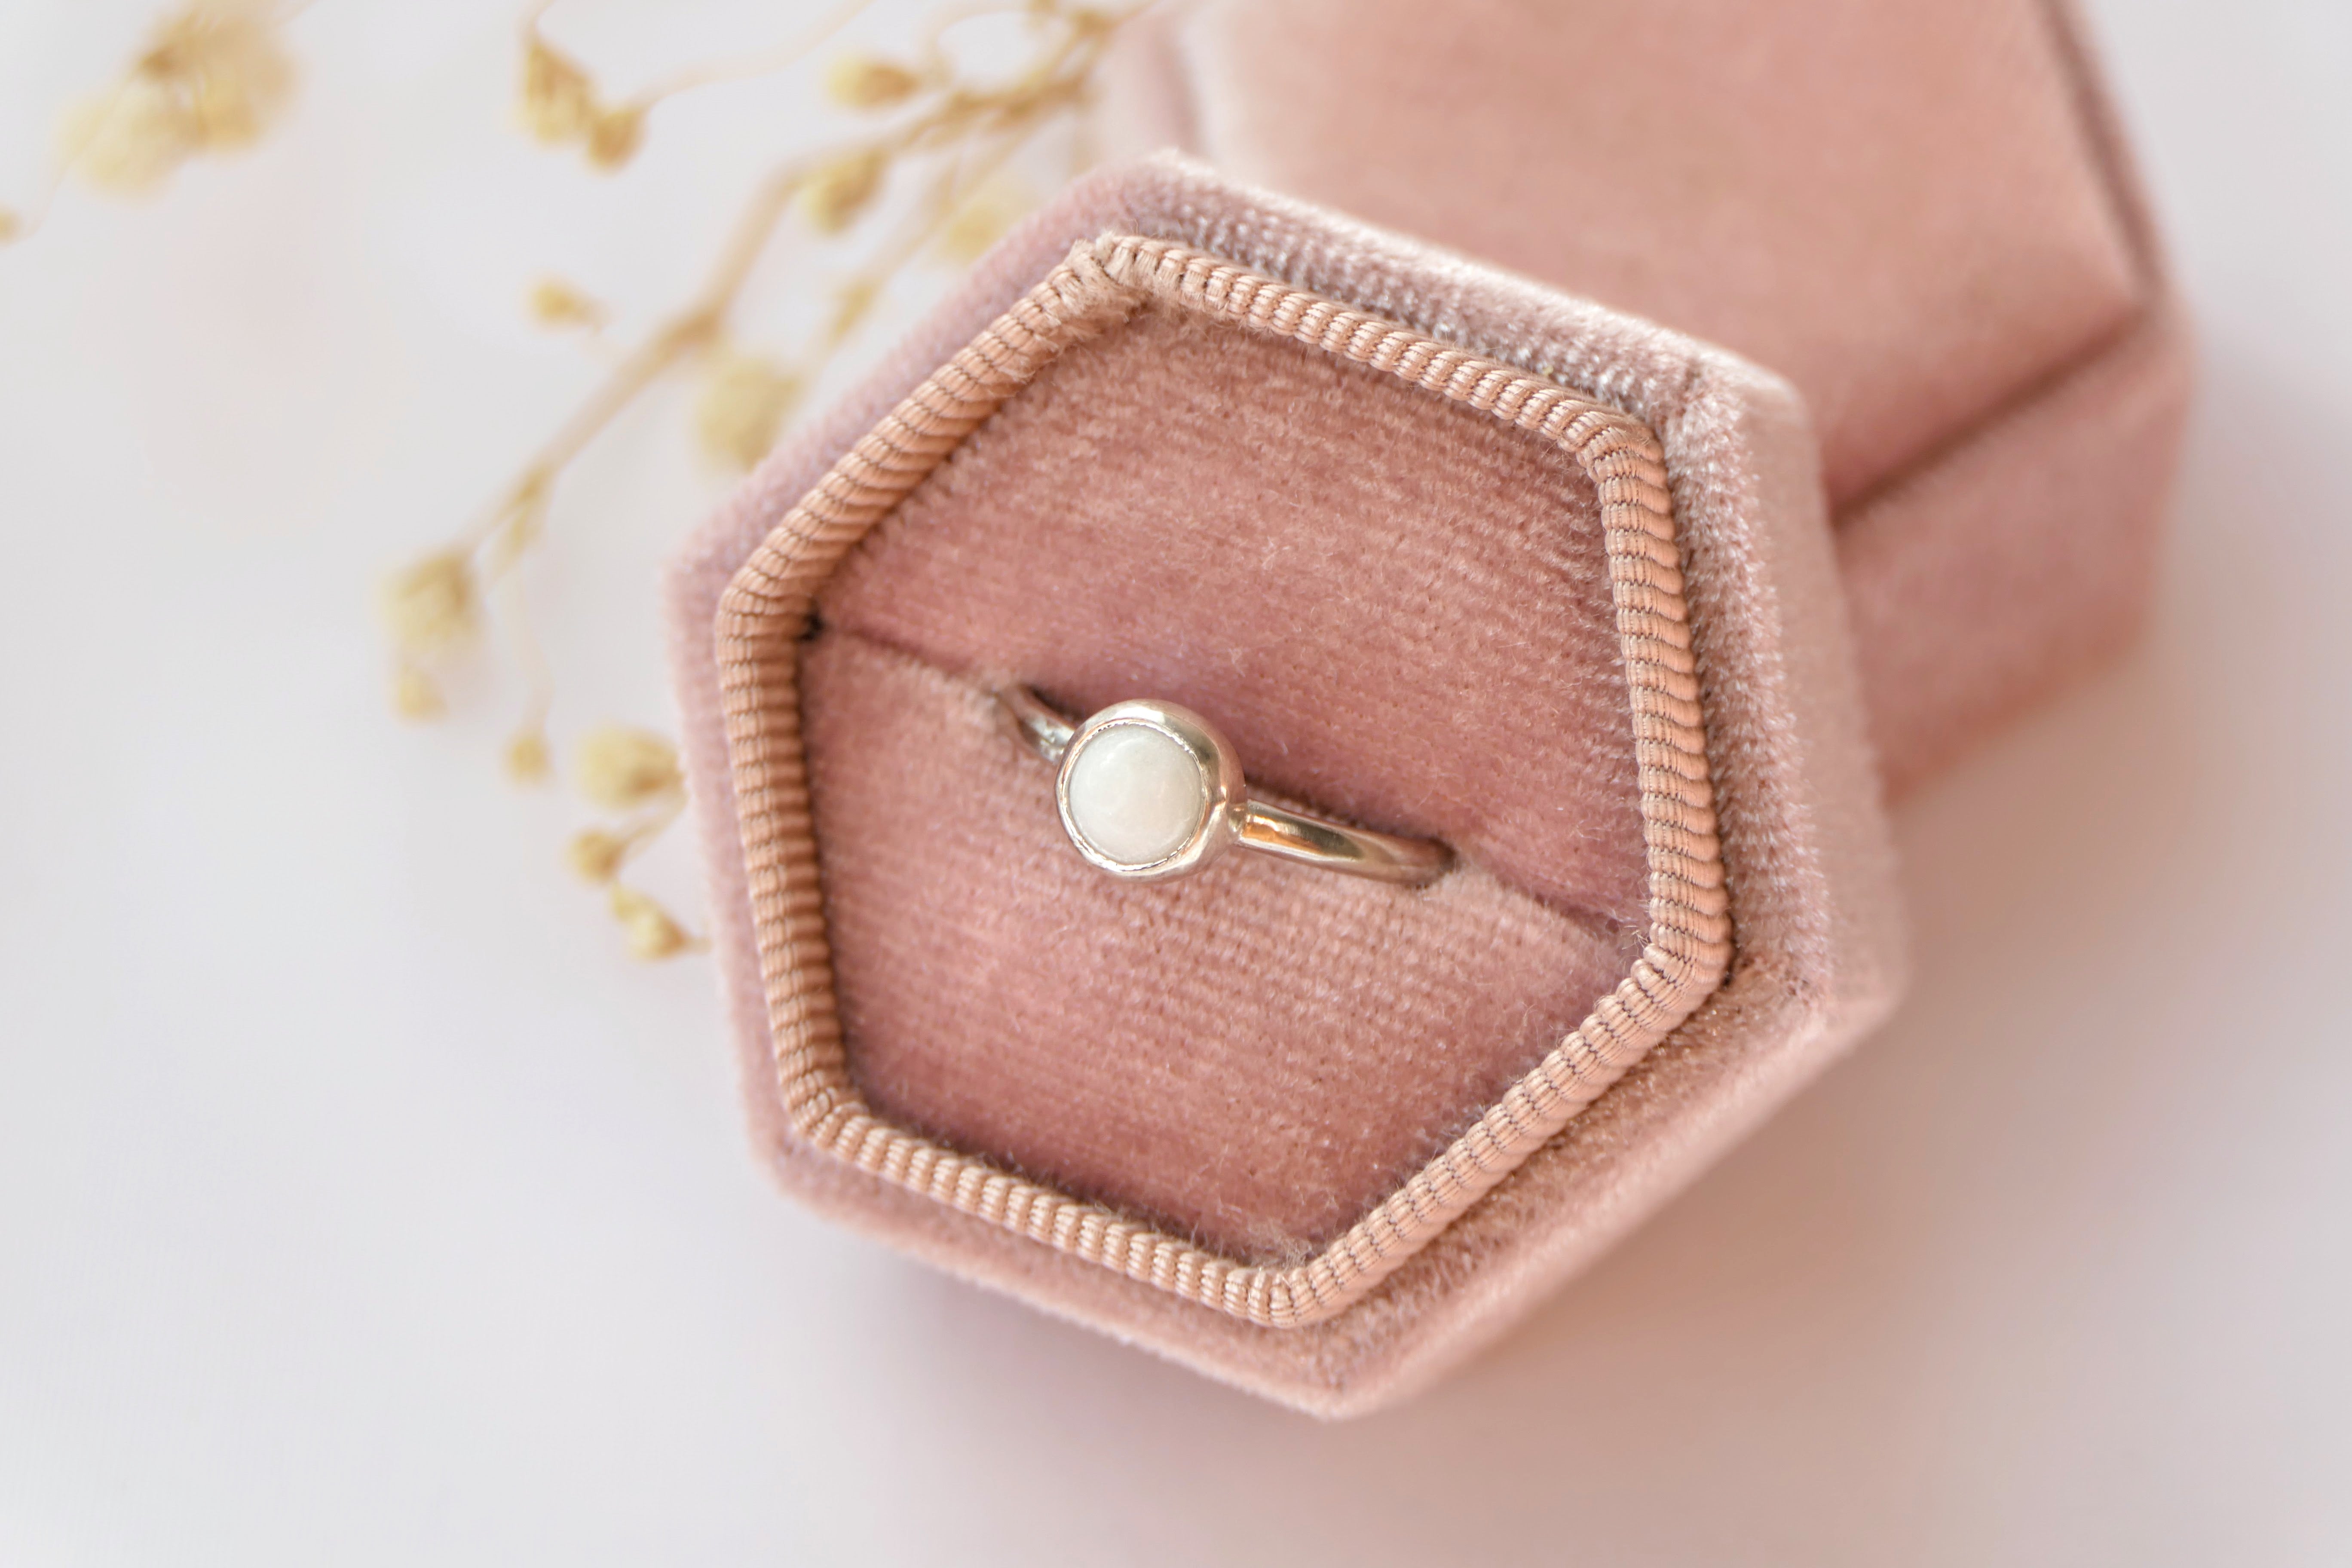 Buy Breastmilk Jewellery in Australia – Beyond Love Creations